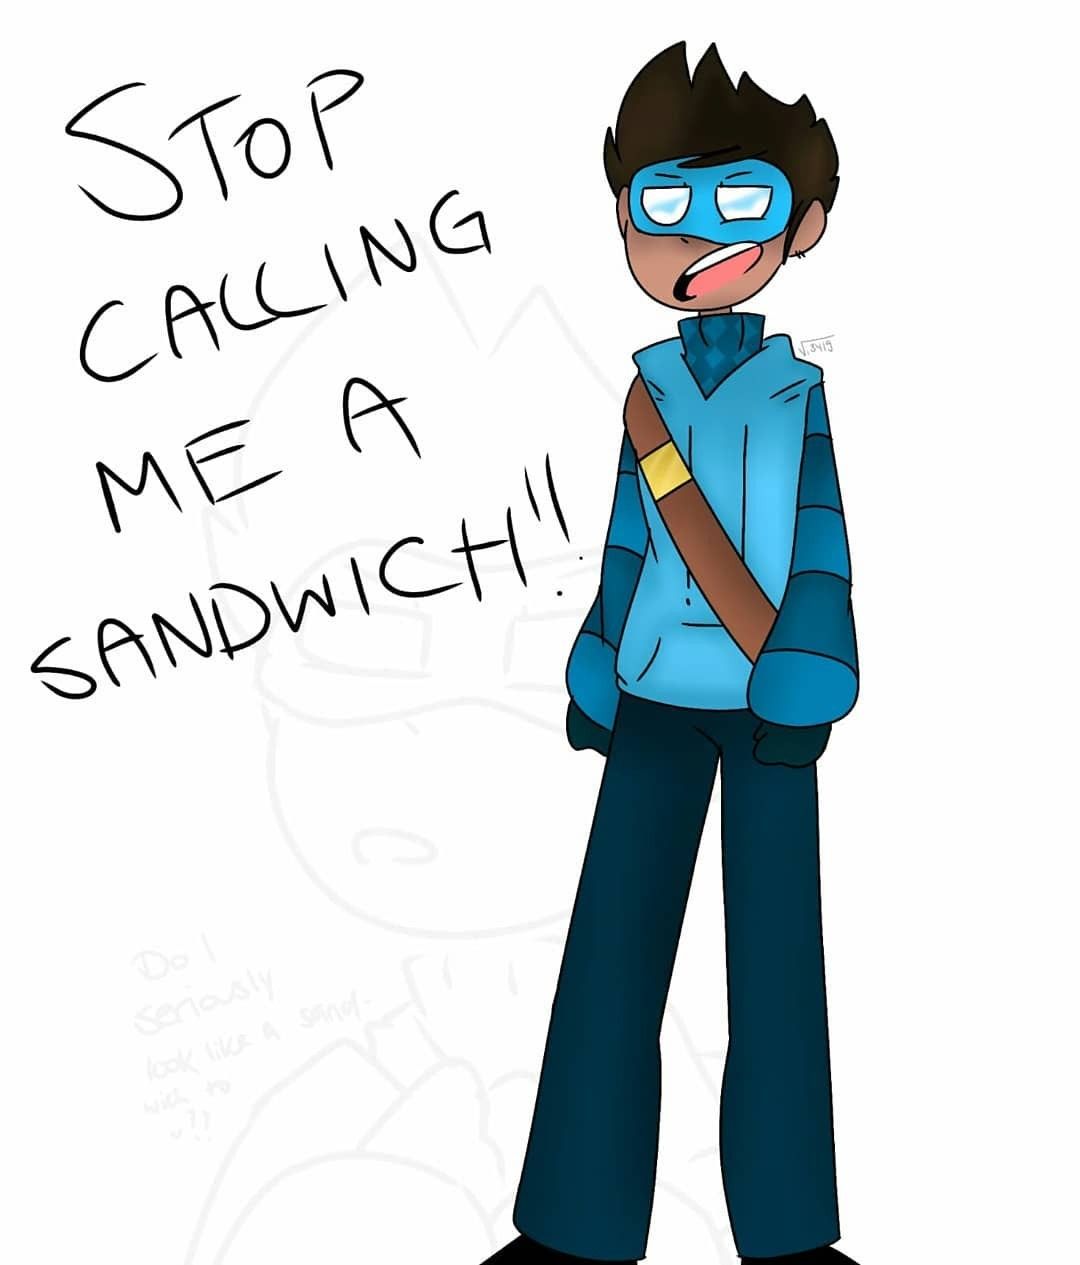 Skeppy Is A Sandwich!